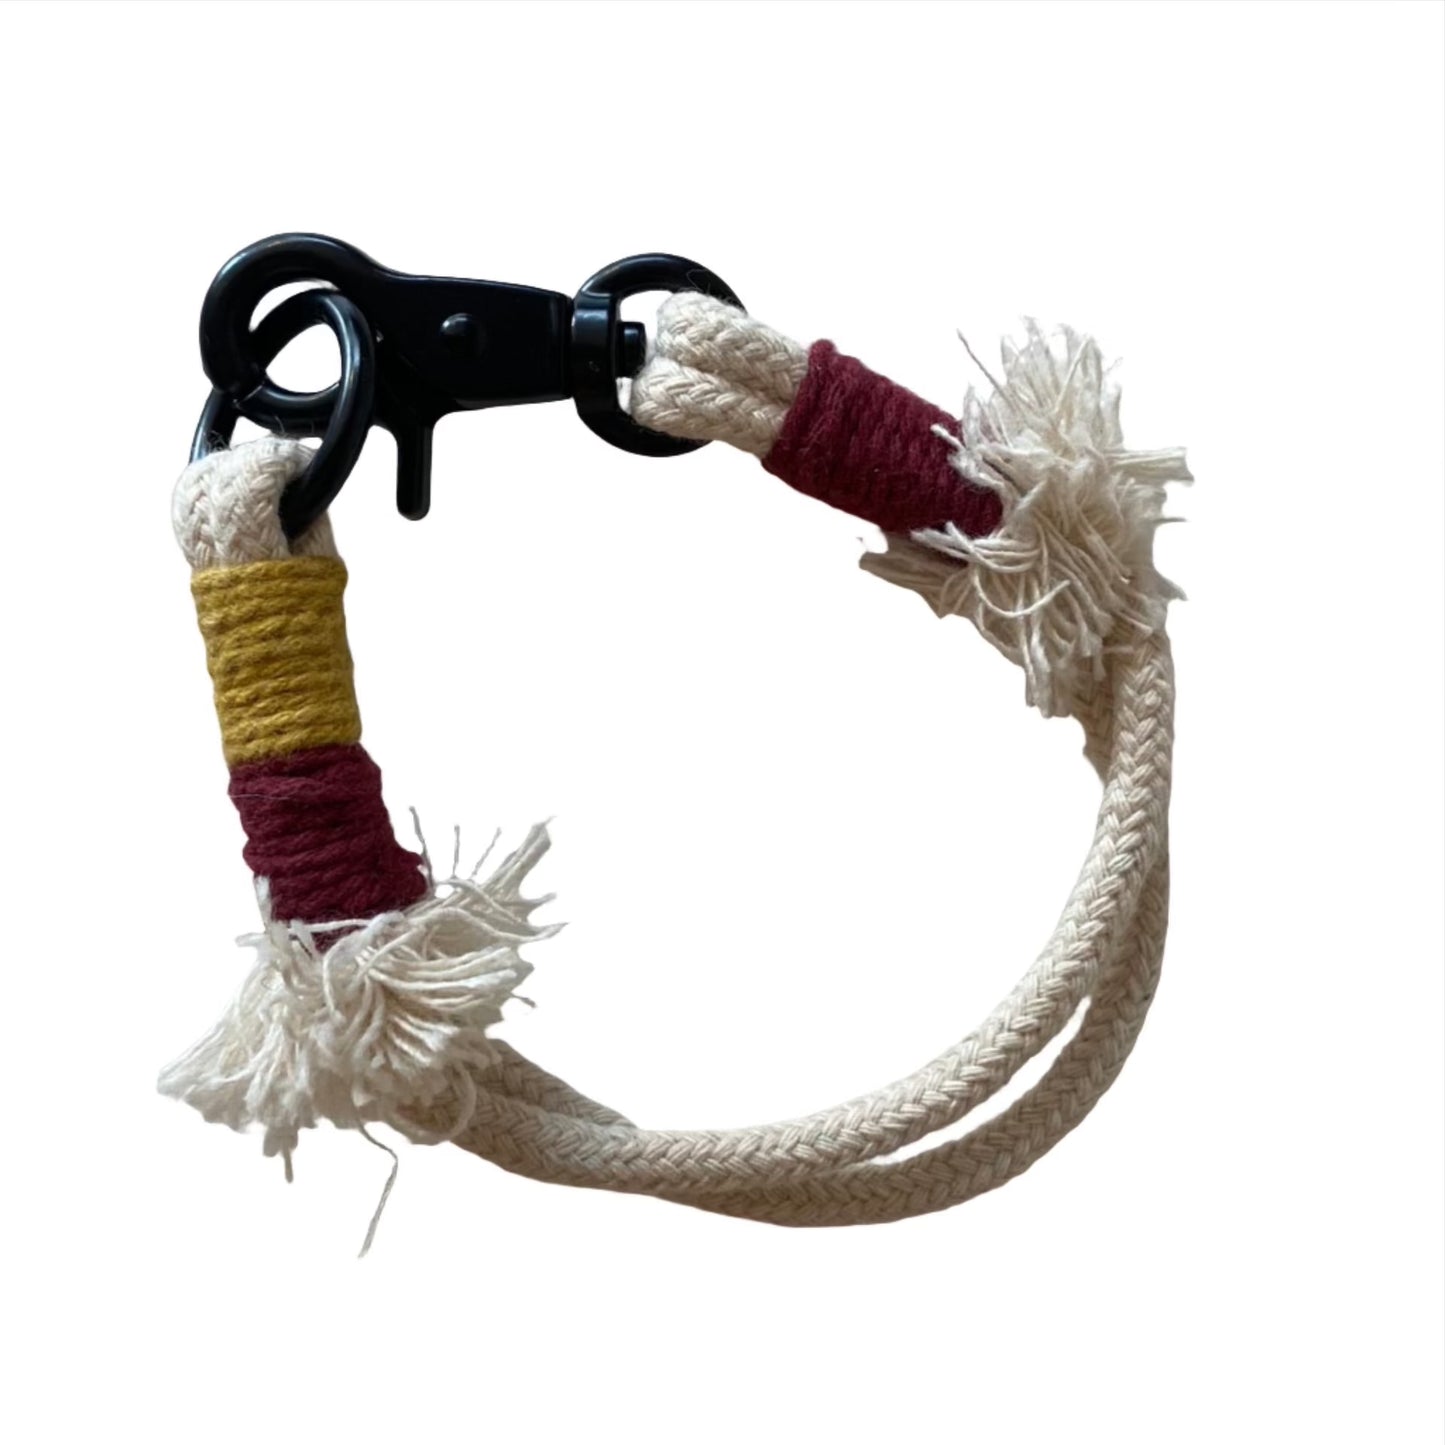 Handmade Cord Bracelet